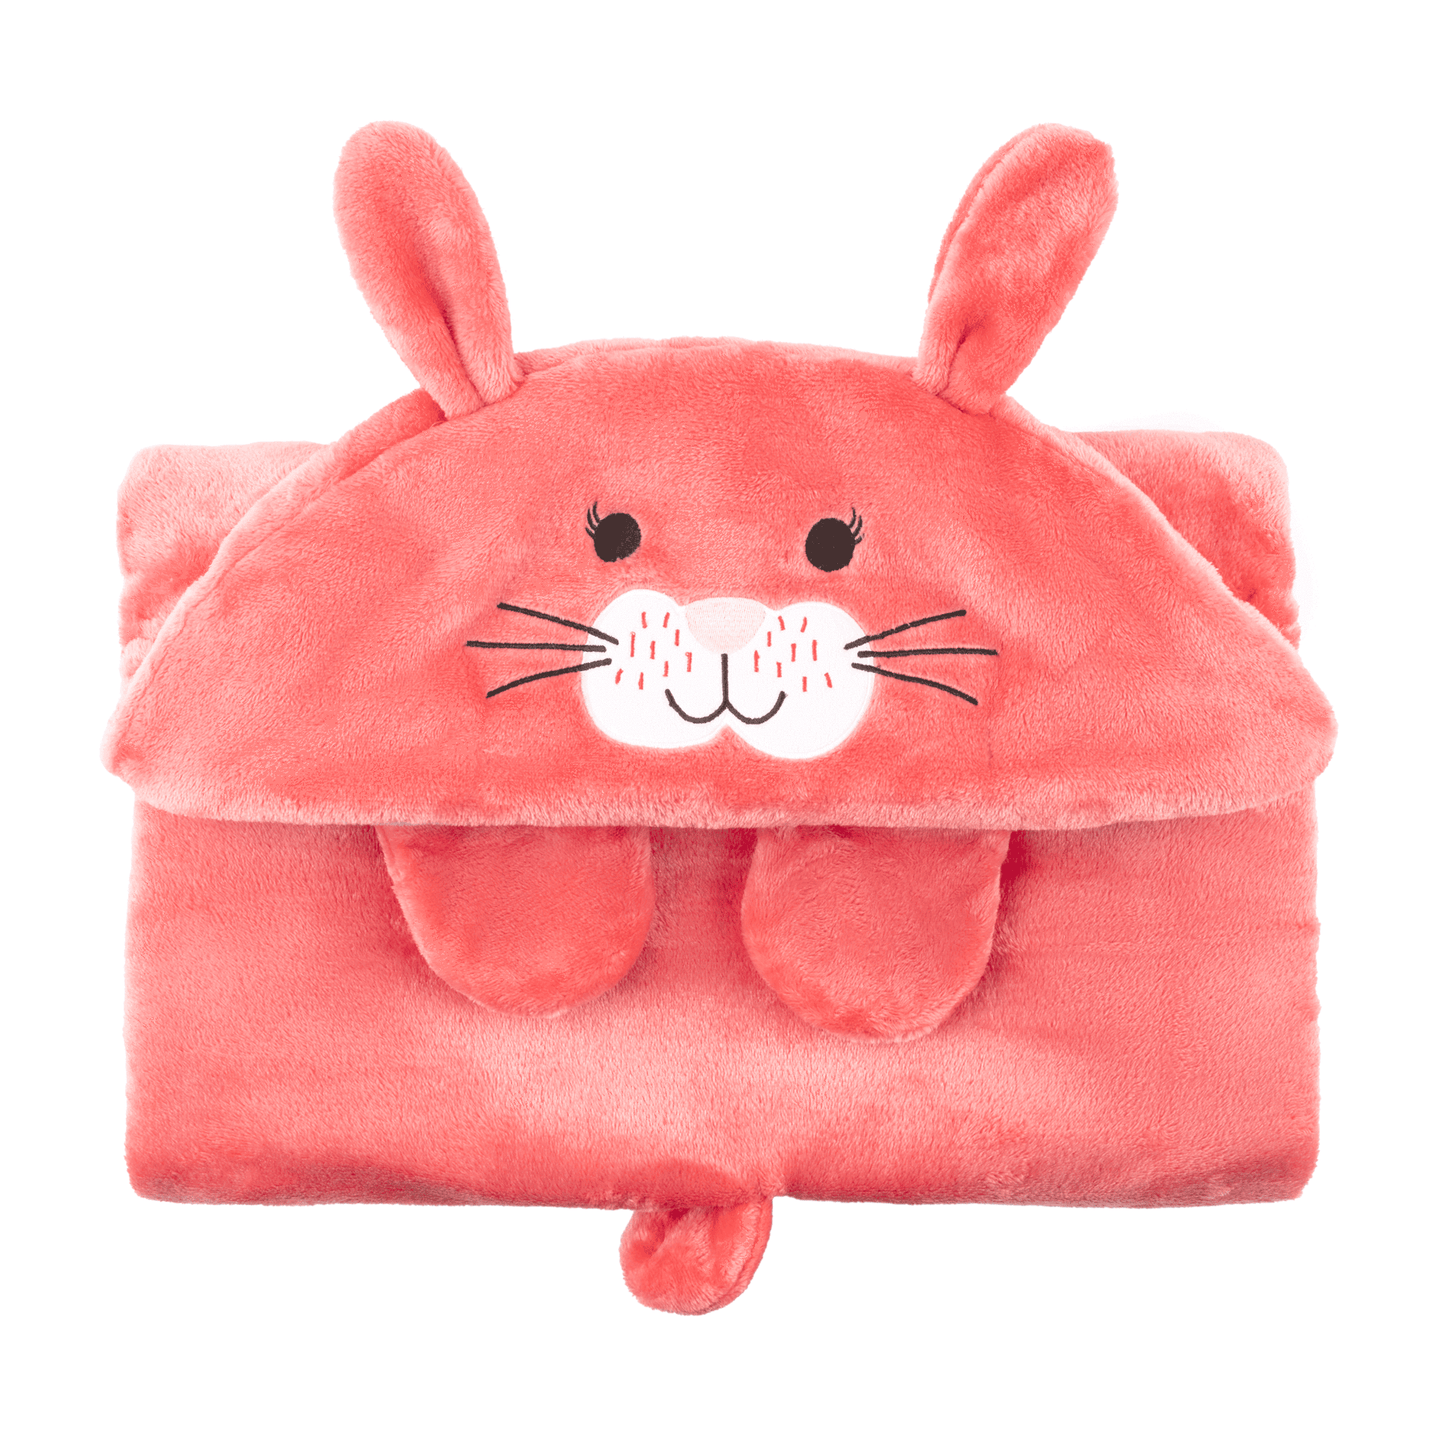 Zoocchini Hooded Blanket - Bunny